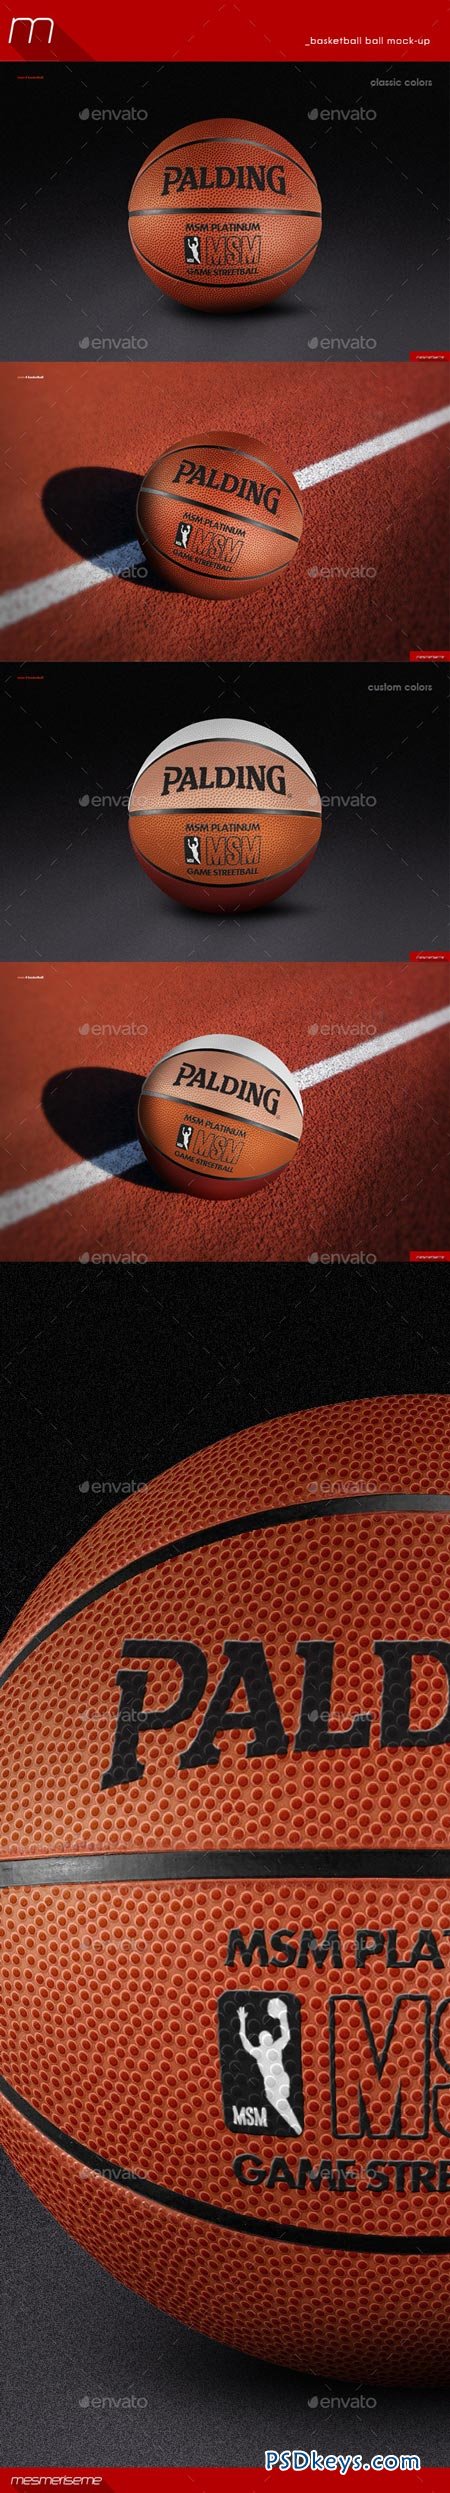 Basketball Ball Mock-up 8887822